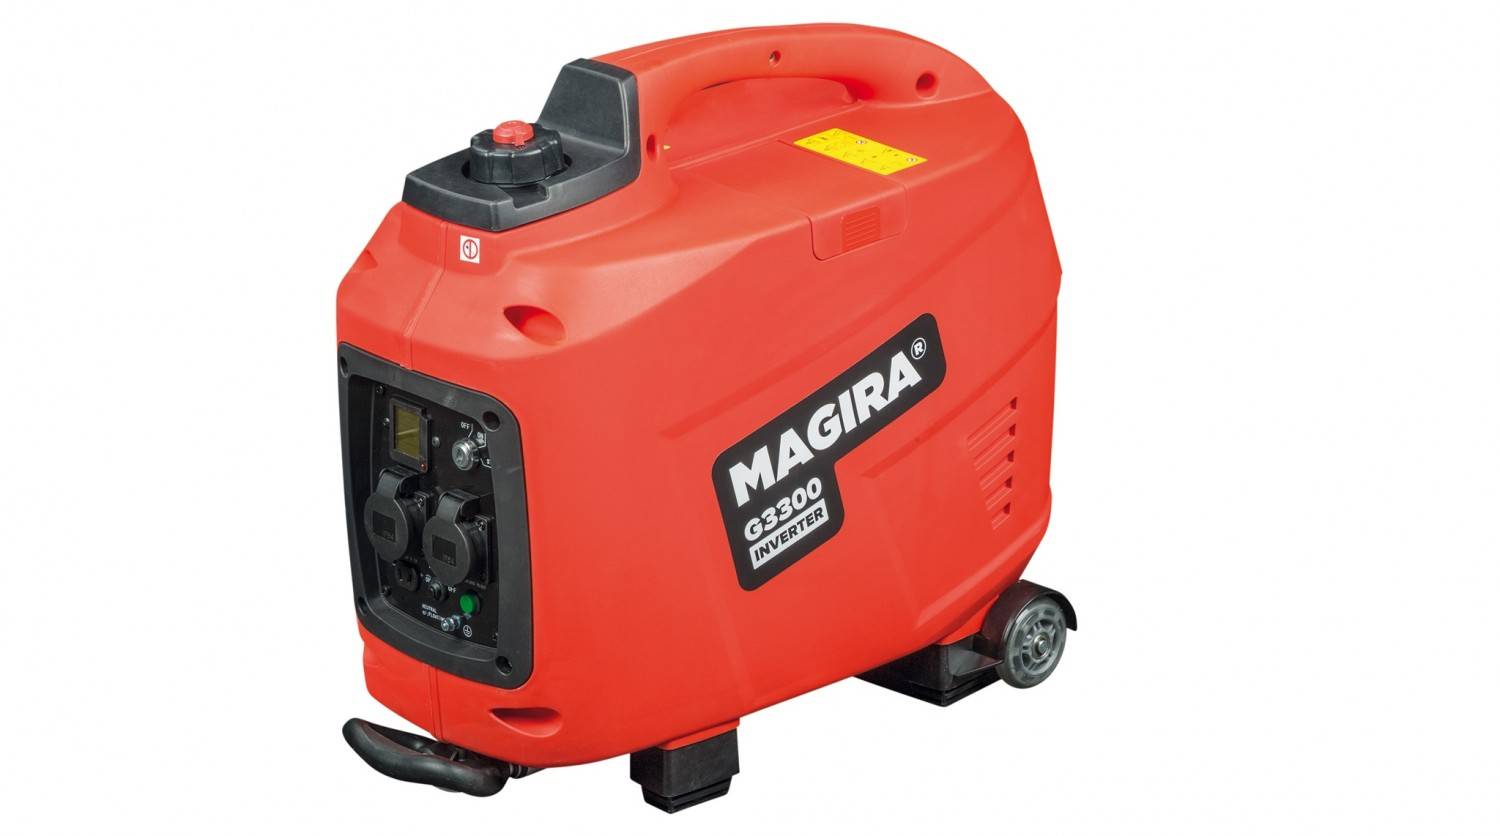 Magira G3300 E - Generatoren im Test - sehr gut 